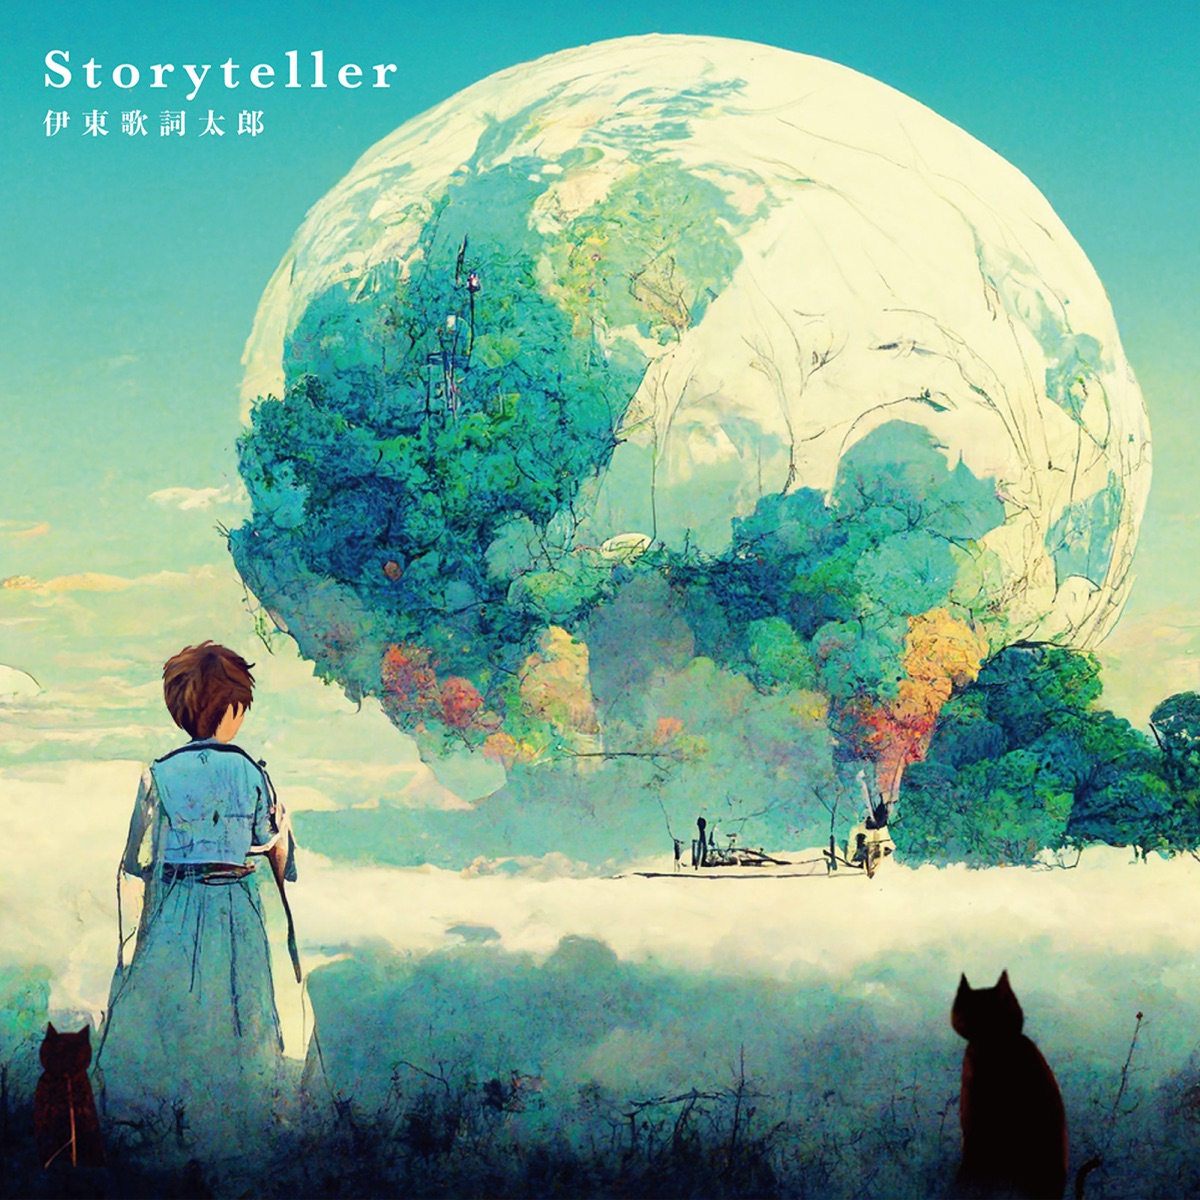 『伊東歌詞太郎 - Storyteller』収録の『Storyteller』ジャケット